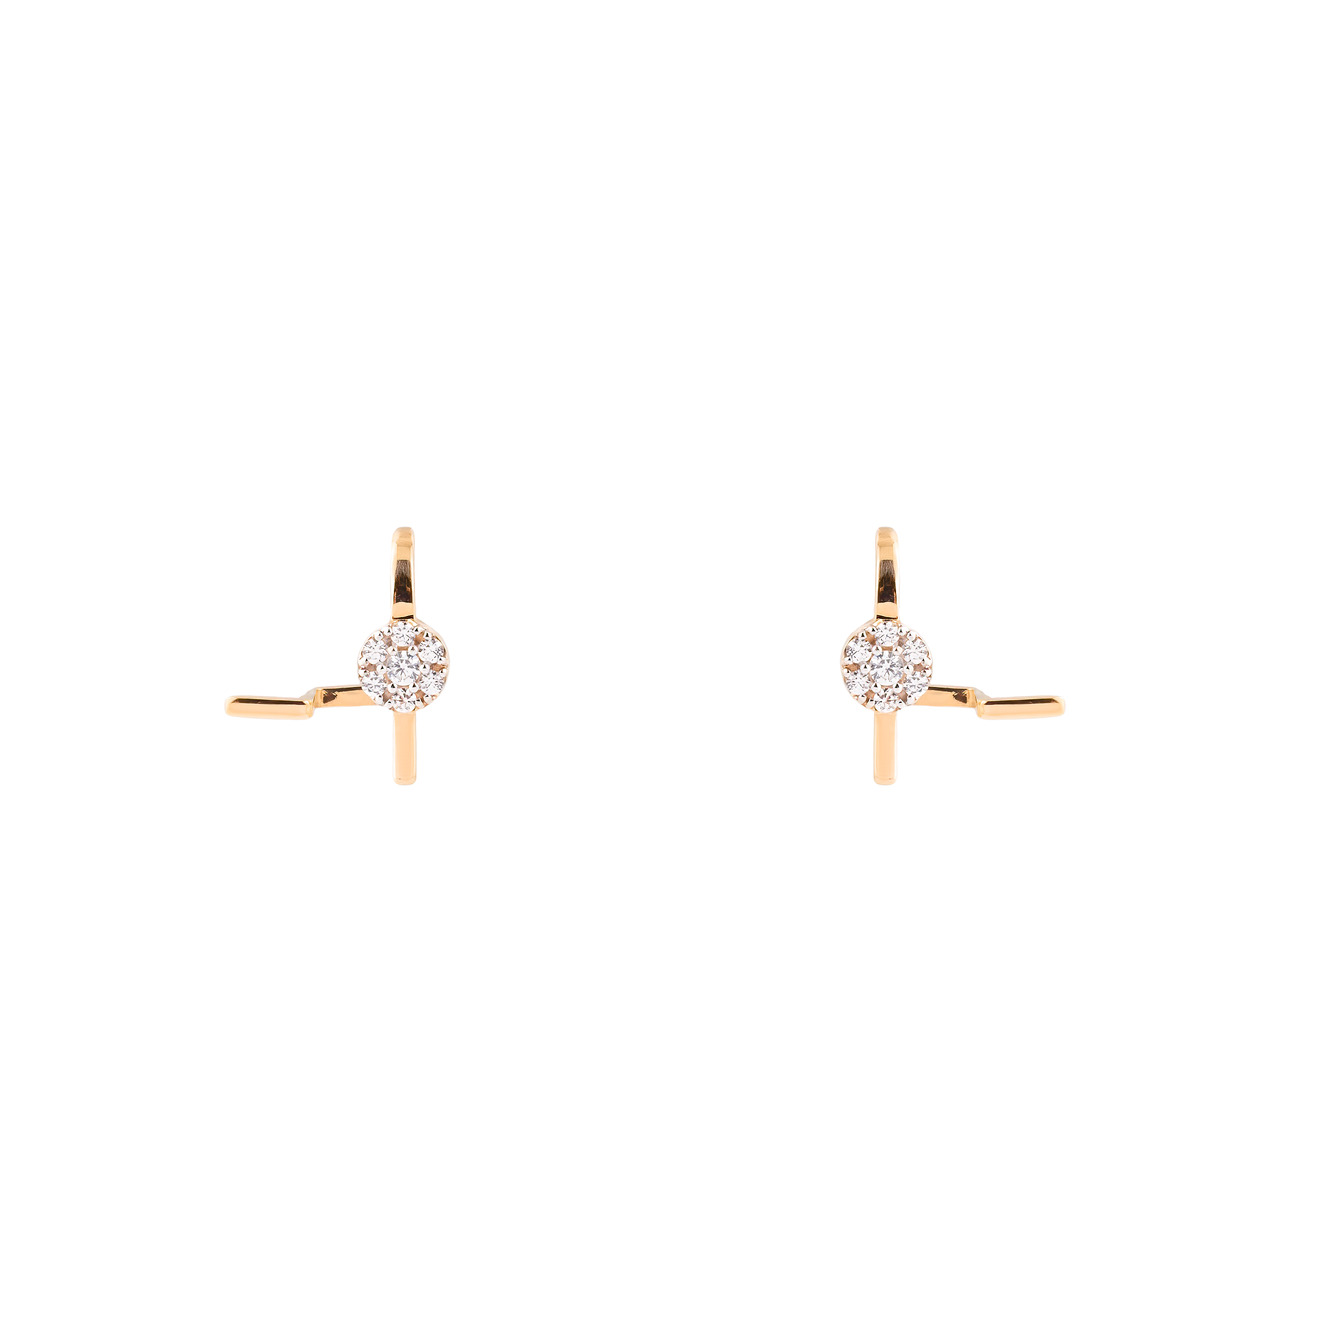 Herald Percy Diamonds Золотые серьги-клаймберы с крупным кристаллом herald percy золотистое кольцо из шариков с крупным кристаллом